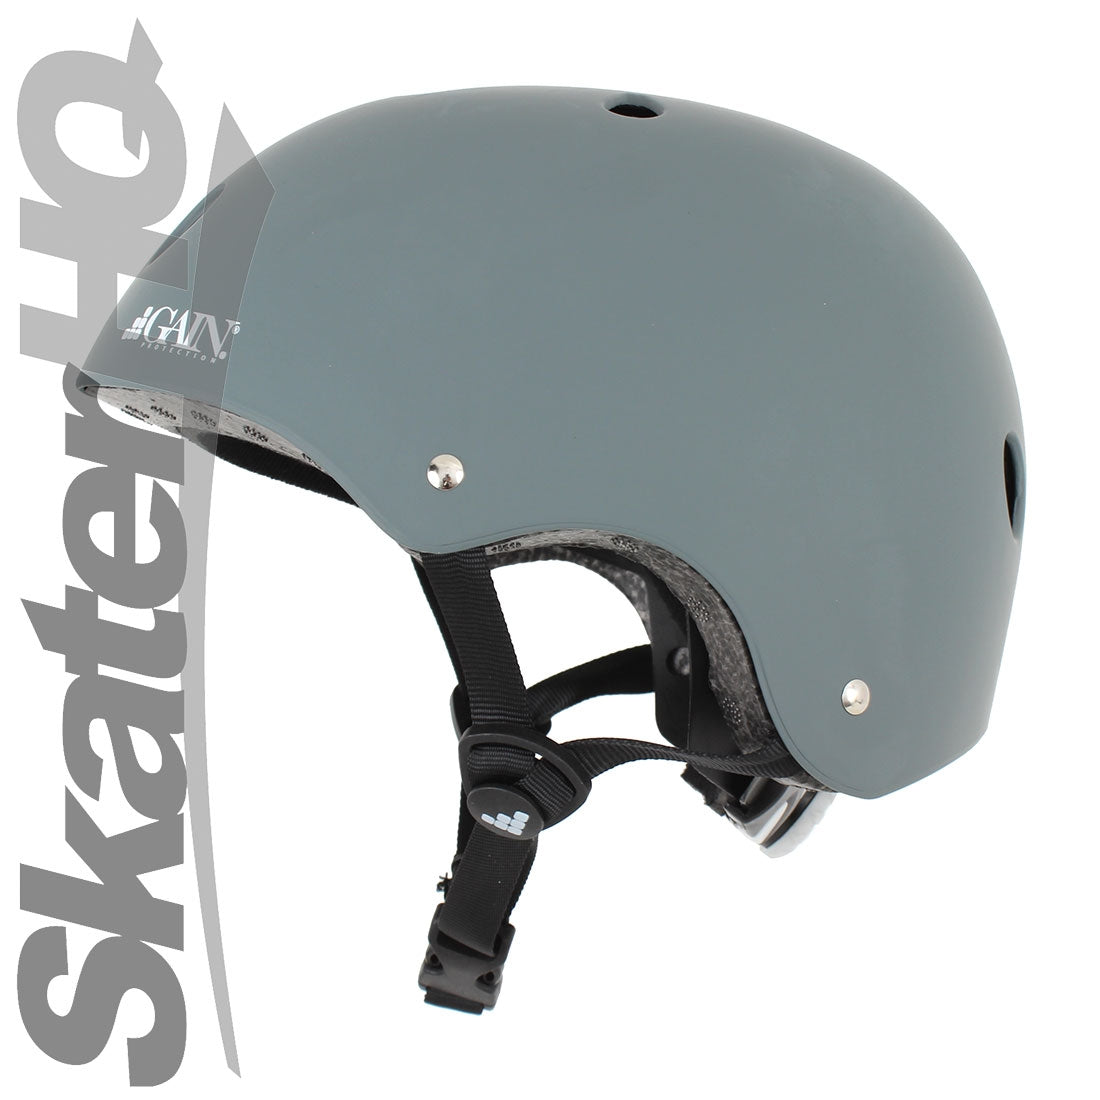 GAIN Sleeper Adjustable Matte Grey Helmet - XS/S/M Helmets